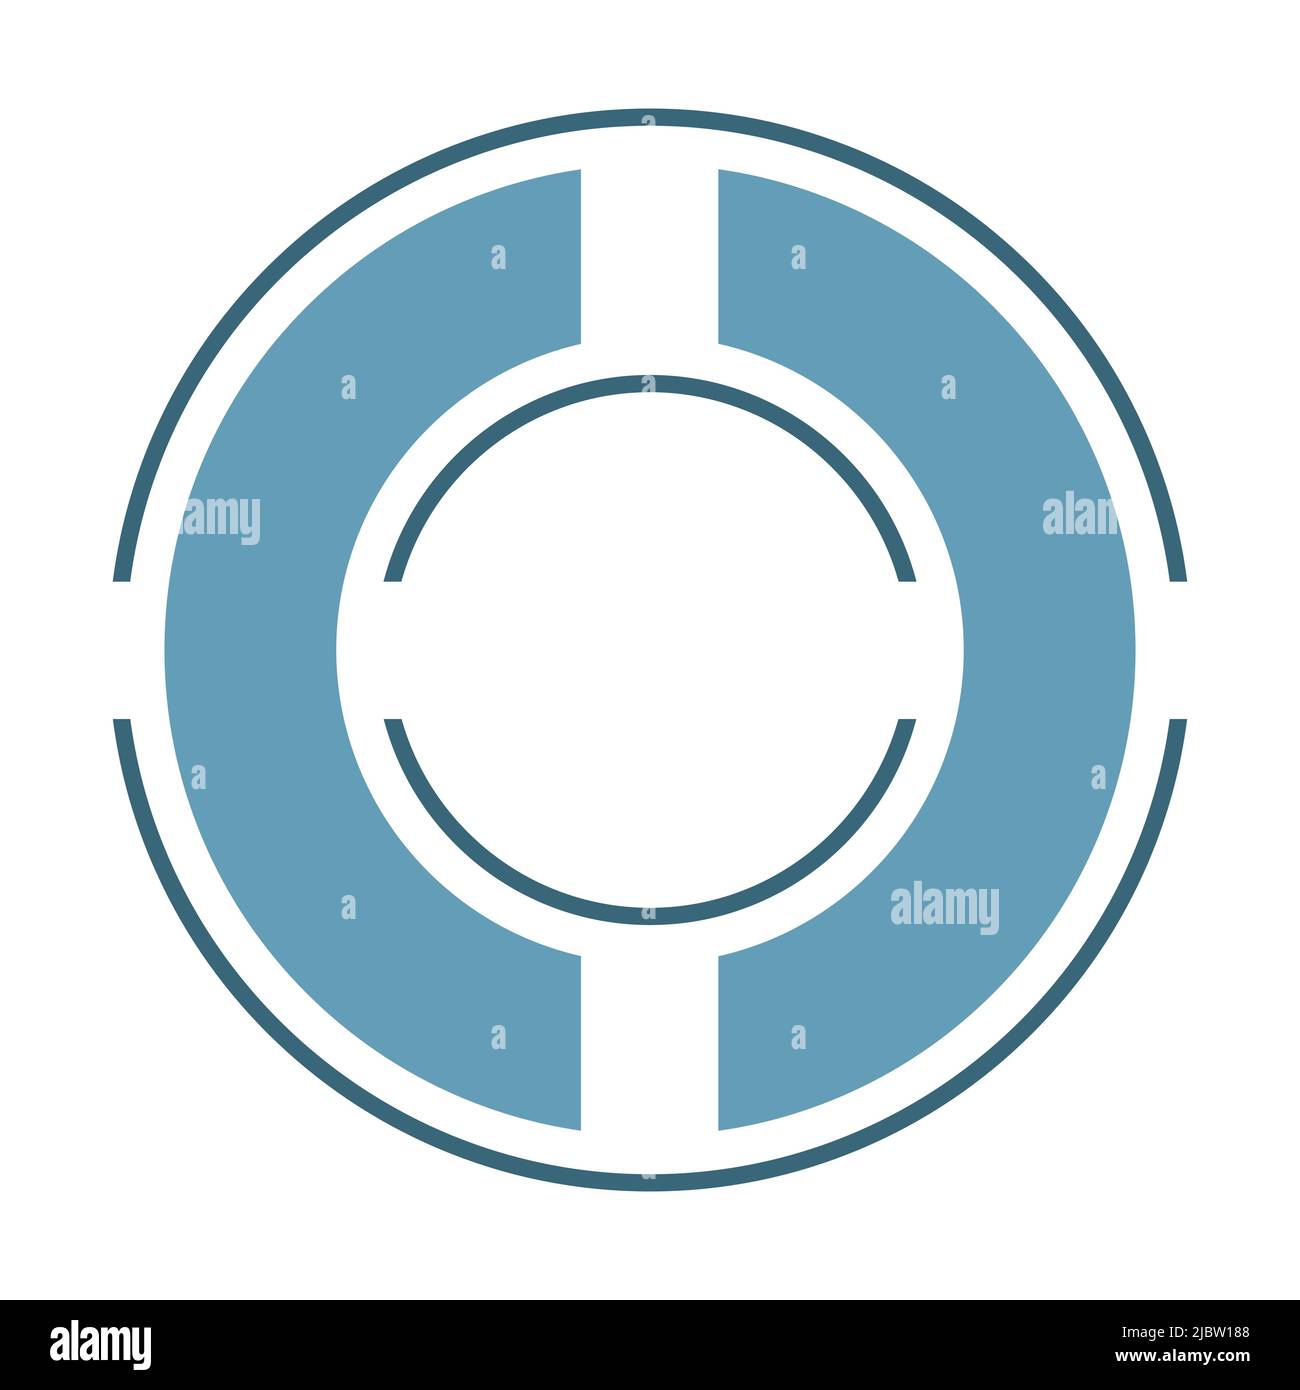 3 cerchi sottili e larghi tagliati in parti, un anello all'interno di un altro, icona aim. Sfumature di blu, disegno piatto su sfondo bianco illustrazione vettoriale. Illustrazione Vettoriale